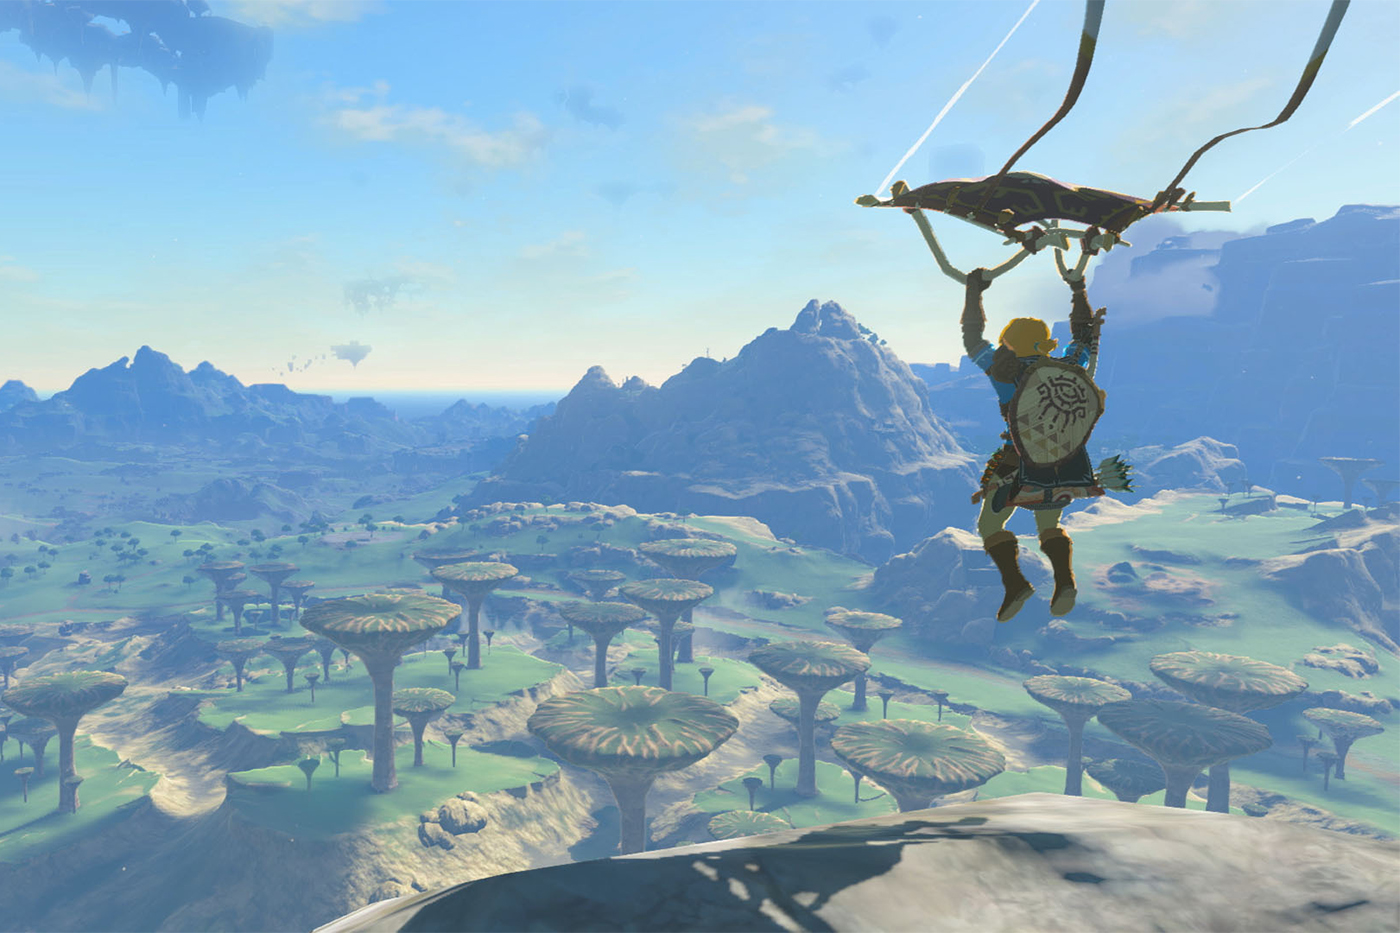 screen capture from Zelda game